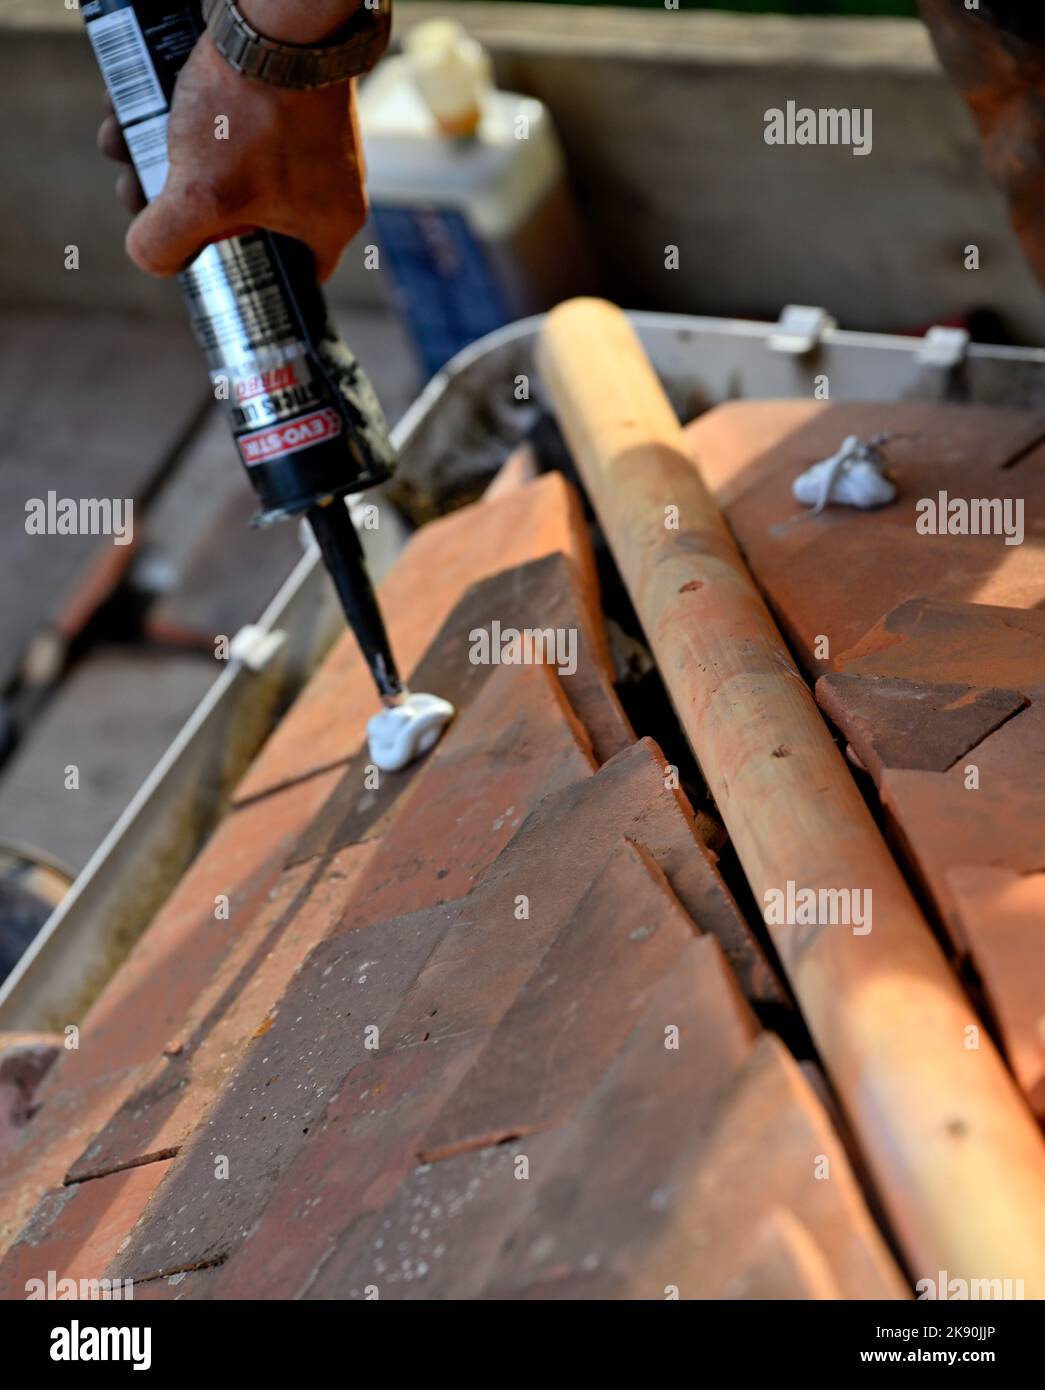 Travaux de toiture sur un toit de baie en terre cuite, en argile, à ébréché, en appliquant de l'adhésif pour maintenir les carreaux de coupe pour l'ajustement de l'angle de coupe sur le rafter de hanche Banque D'Images